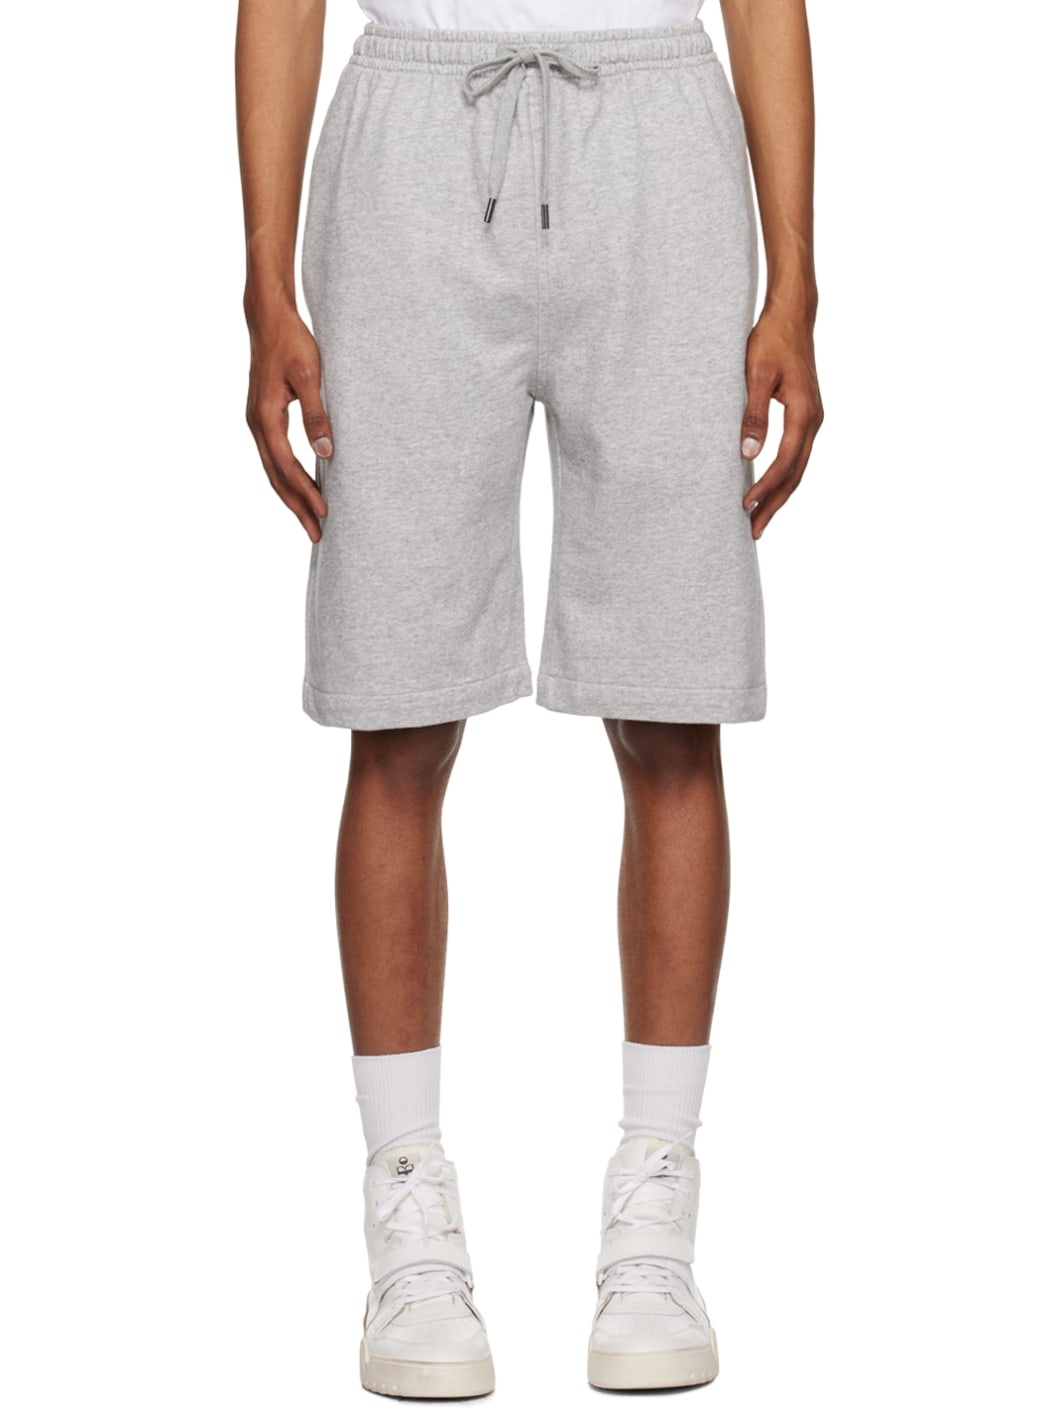 Gray Mahelo Shorts - 1